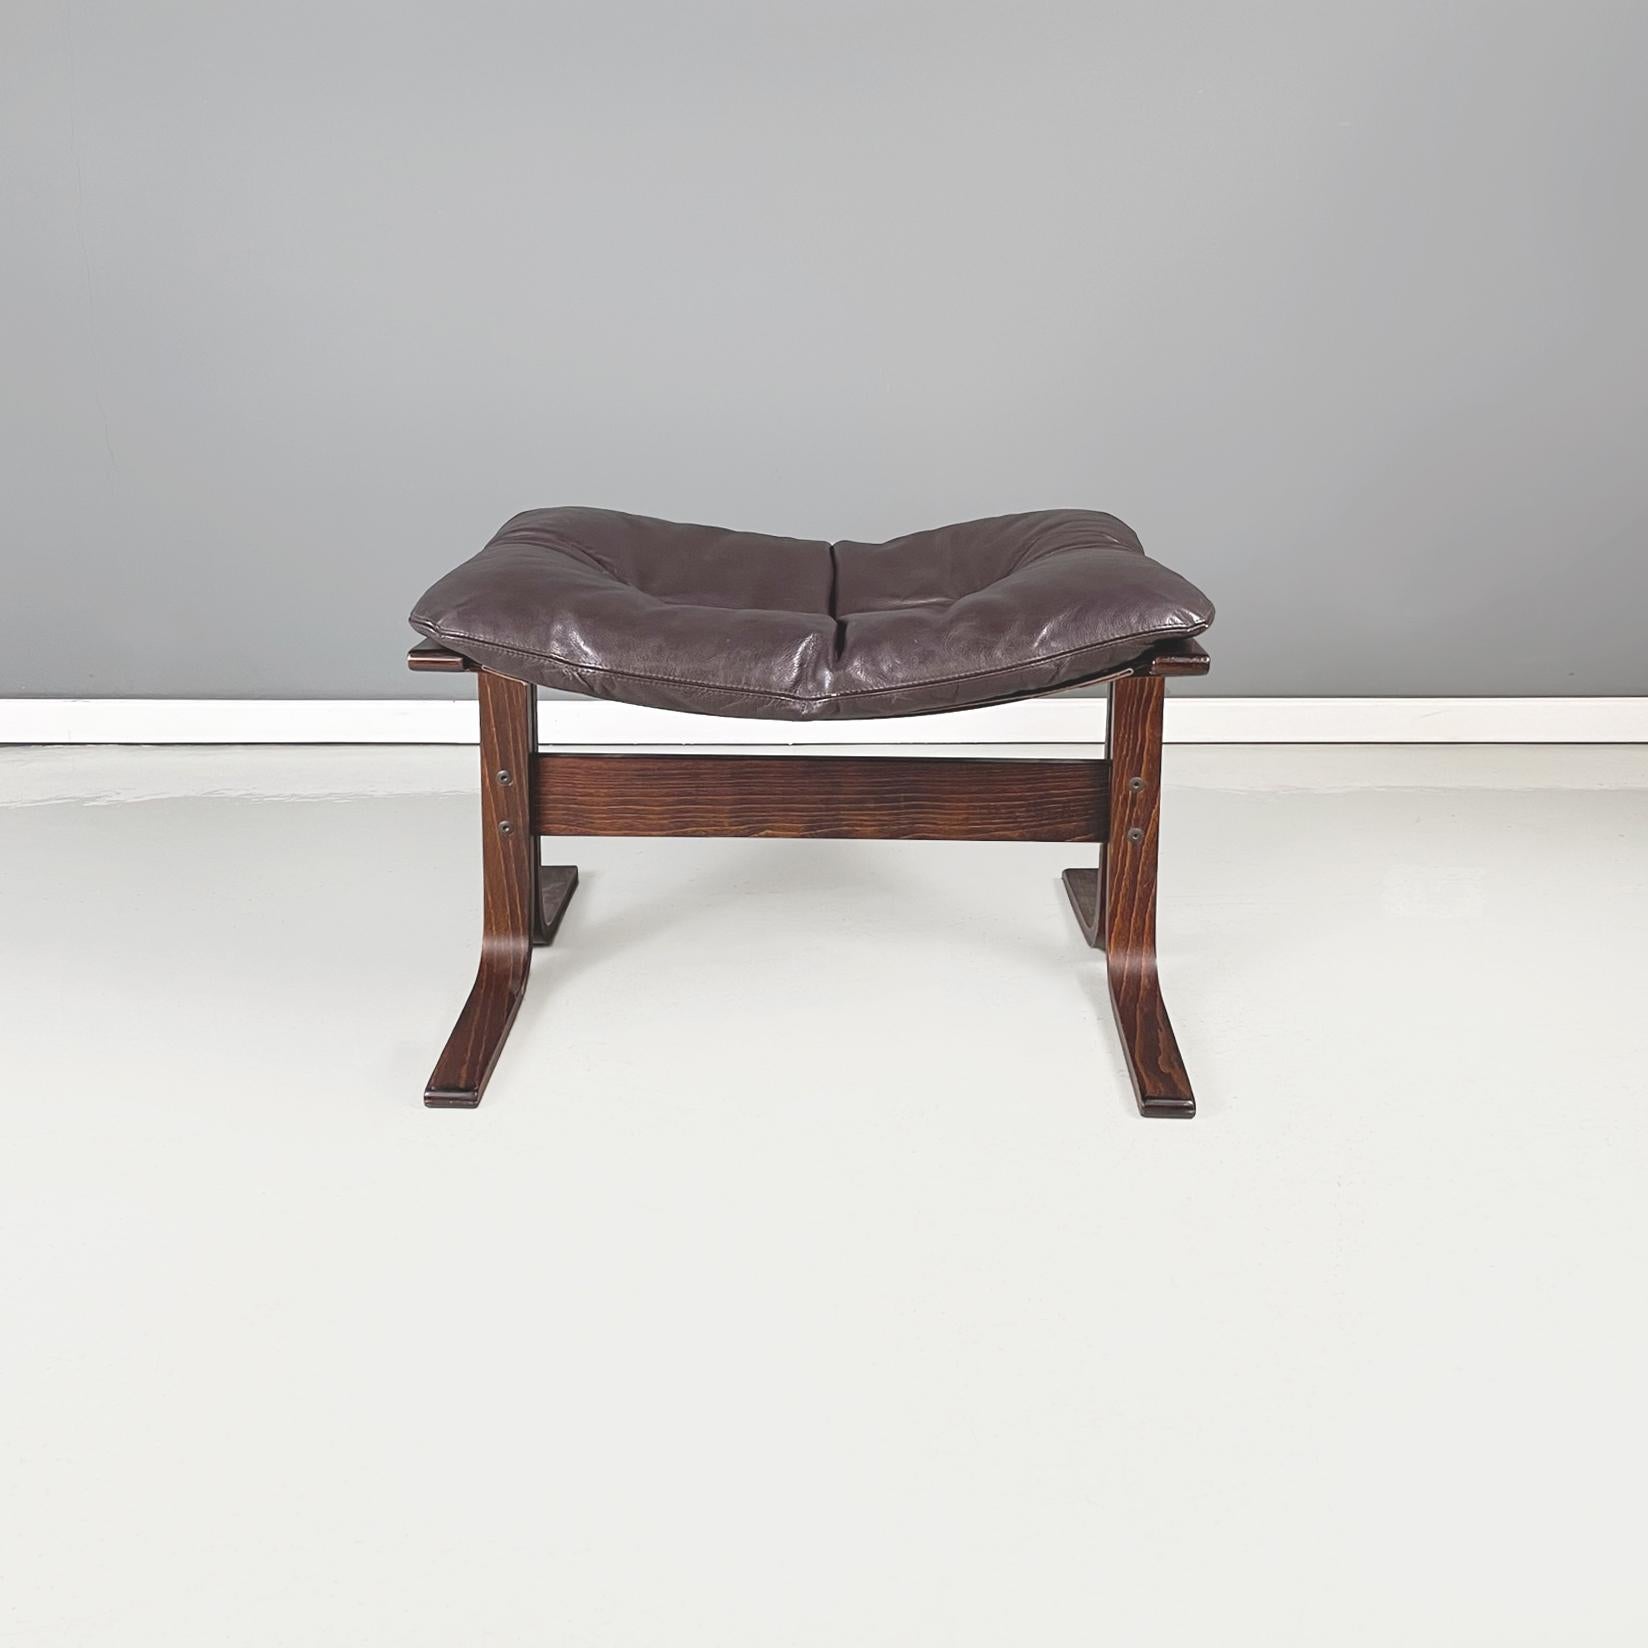 Pouf moderne norvégien en cuir brun Siesta par Igmar Relling pour Westnofa Furniture, 1970
Pouf mod. Siesta avec assise rectangulaire en cuir brun foncé avec boutons. L'assise est soutenue par un tissu marron. La structure du pouf est en bois